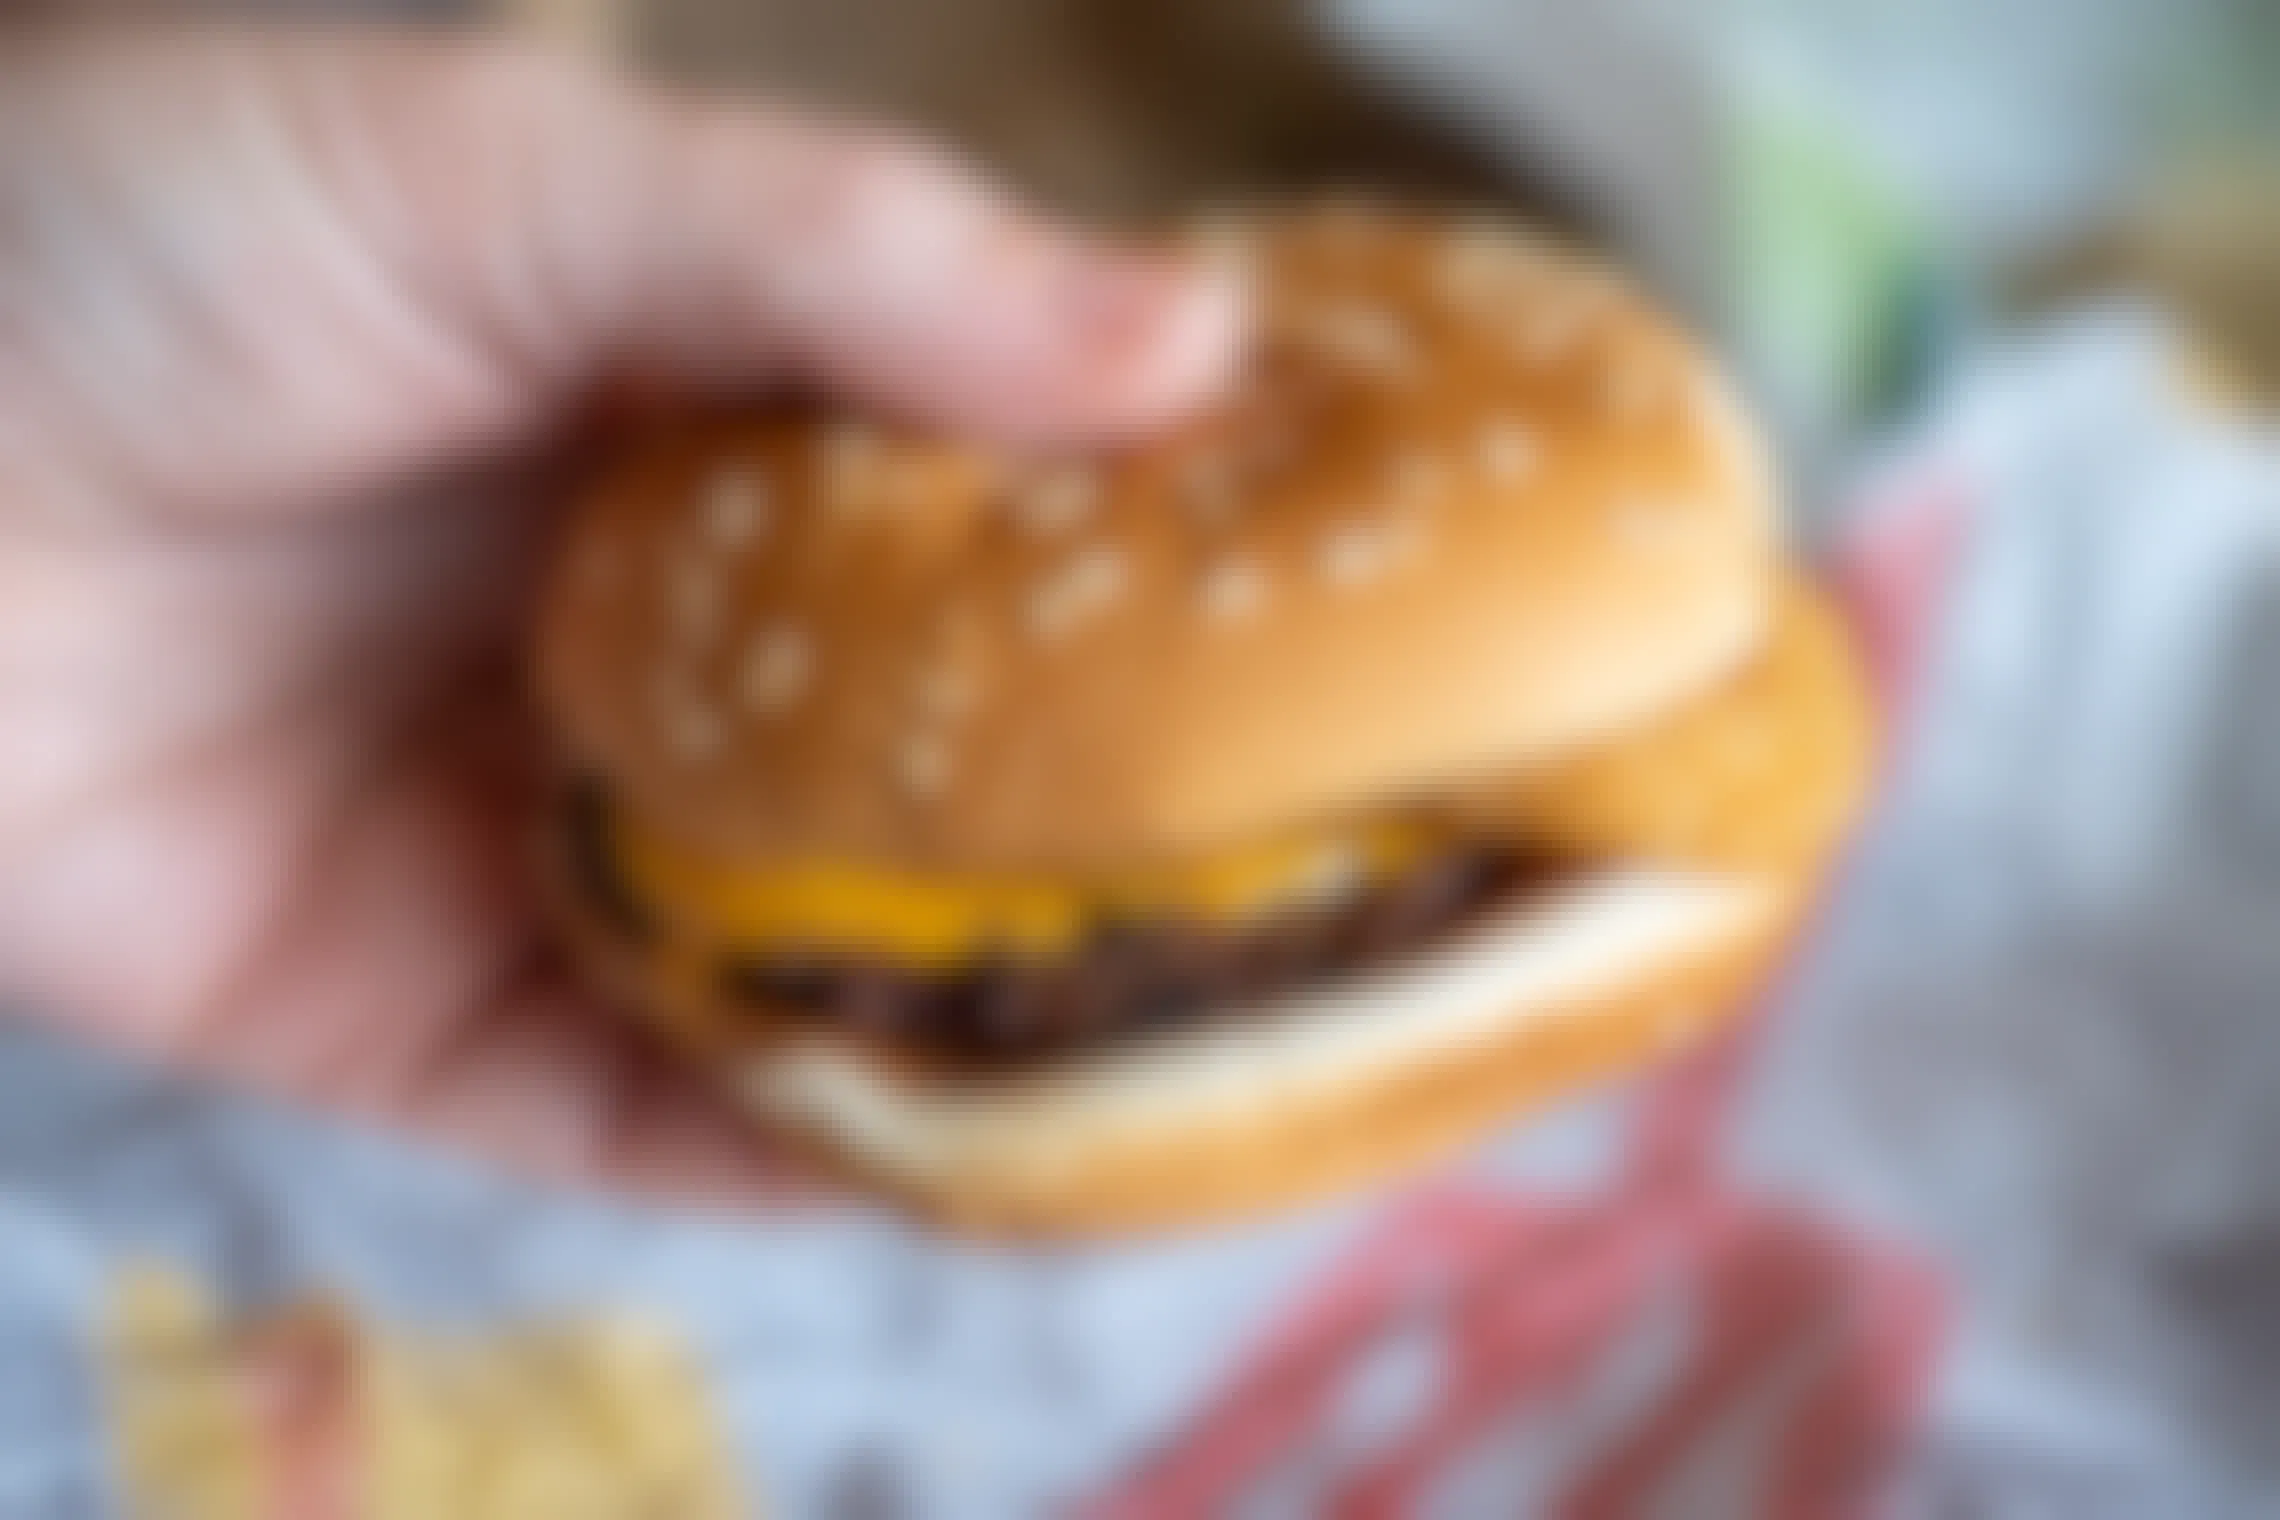 Burger from Burger King